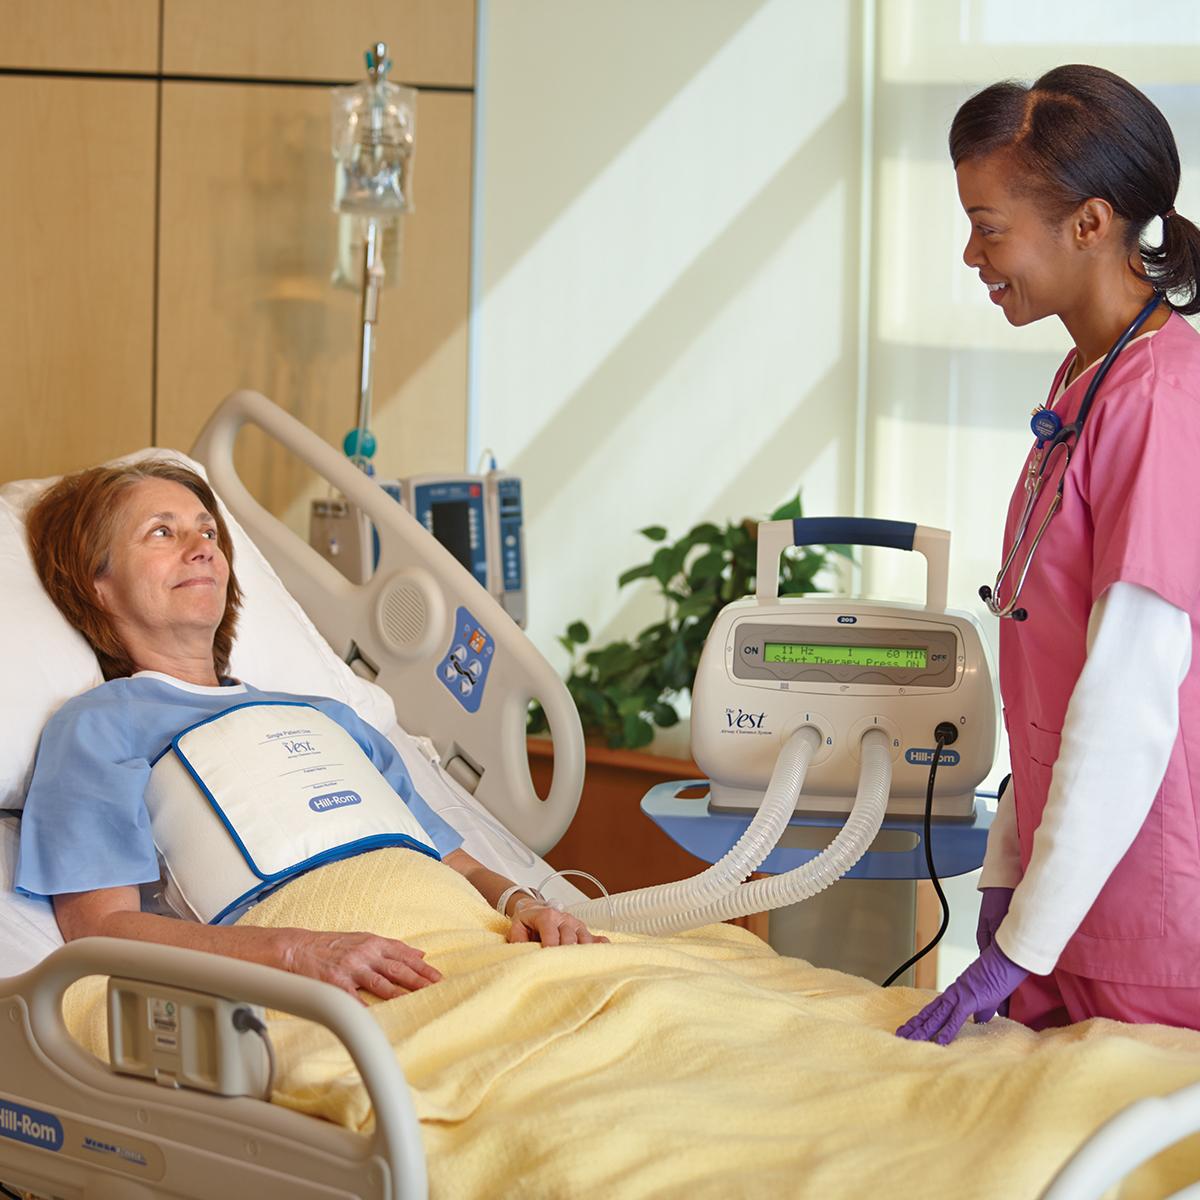 Una paziente in un letto d'ospedale riceve il trattamento mediante il sistema Vest, modello 205, indossando l'apposita fascia.